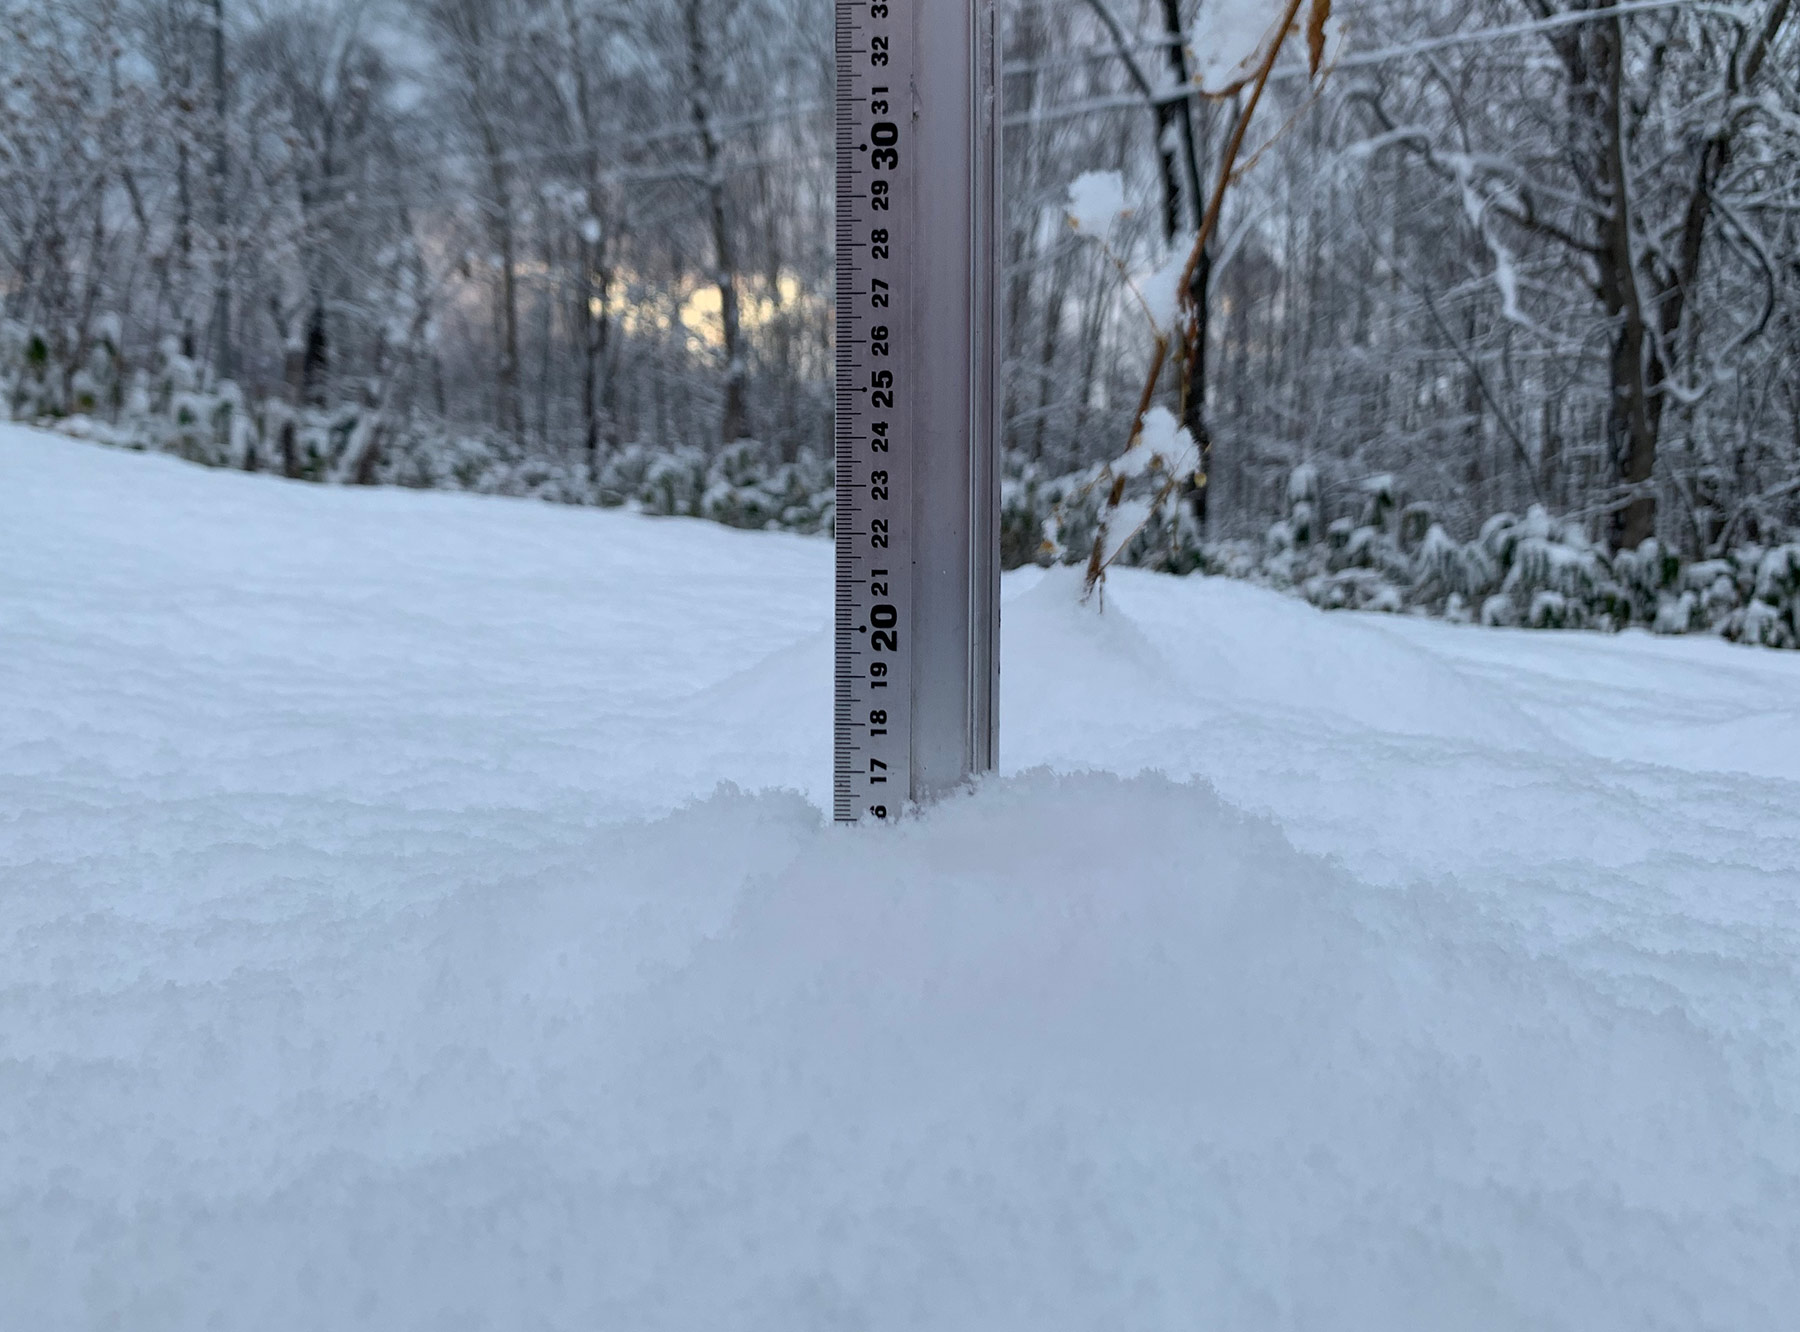 Niseko Snow Report, 30 November 2019